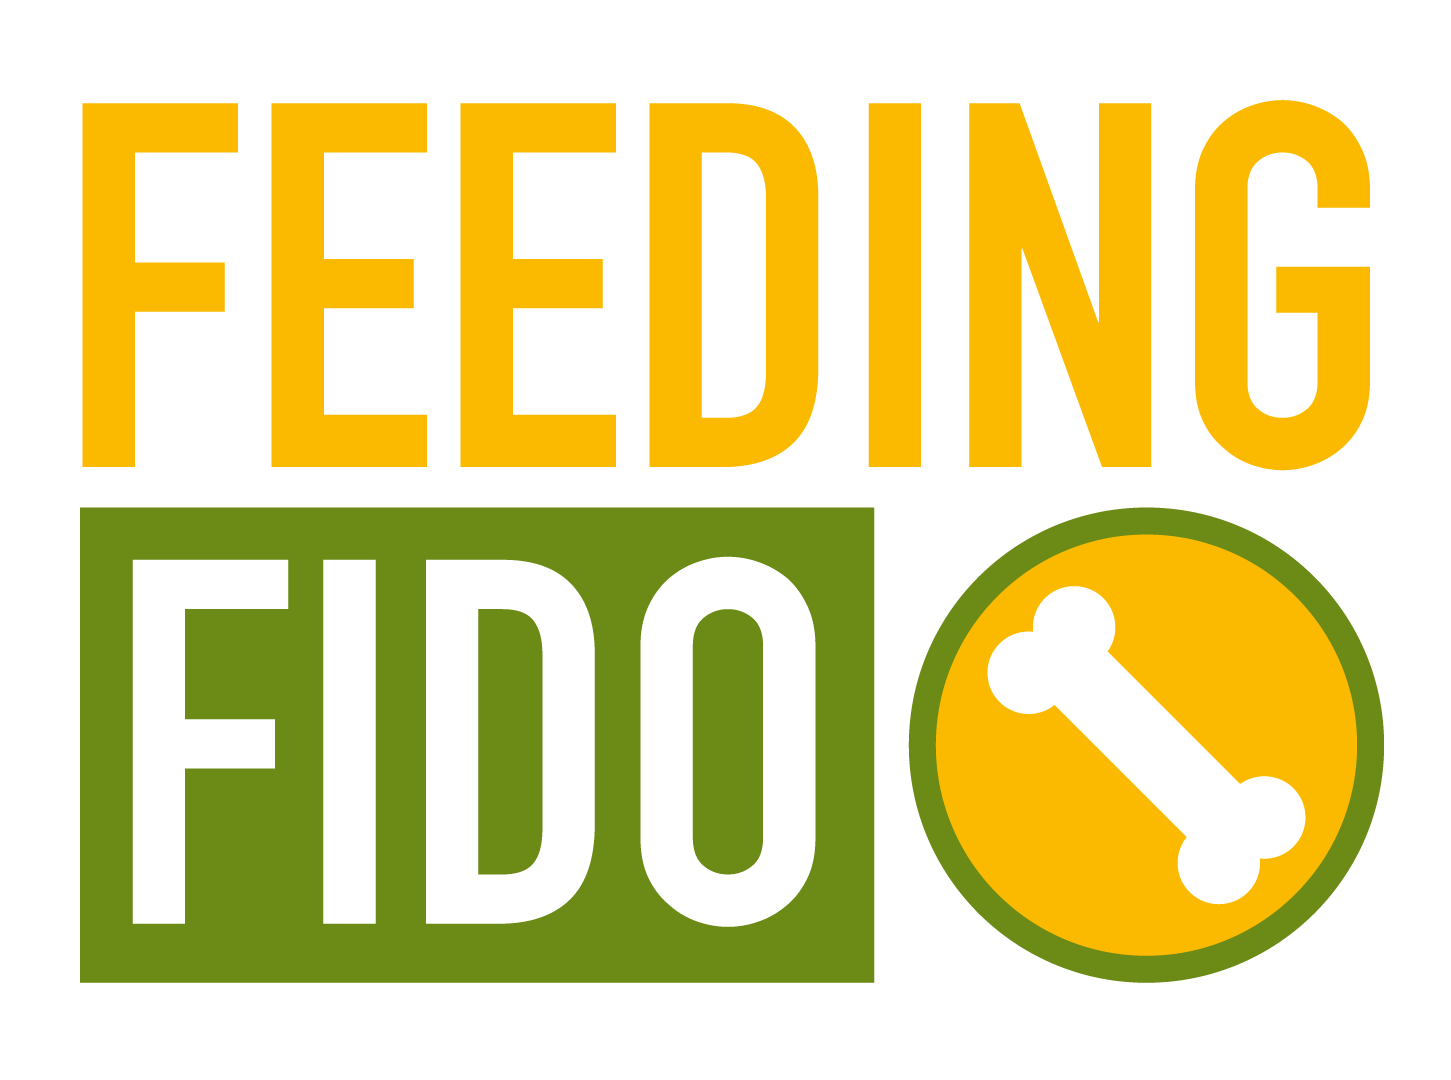 Feeding Fido